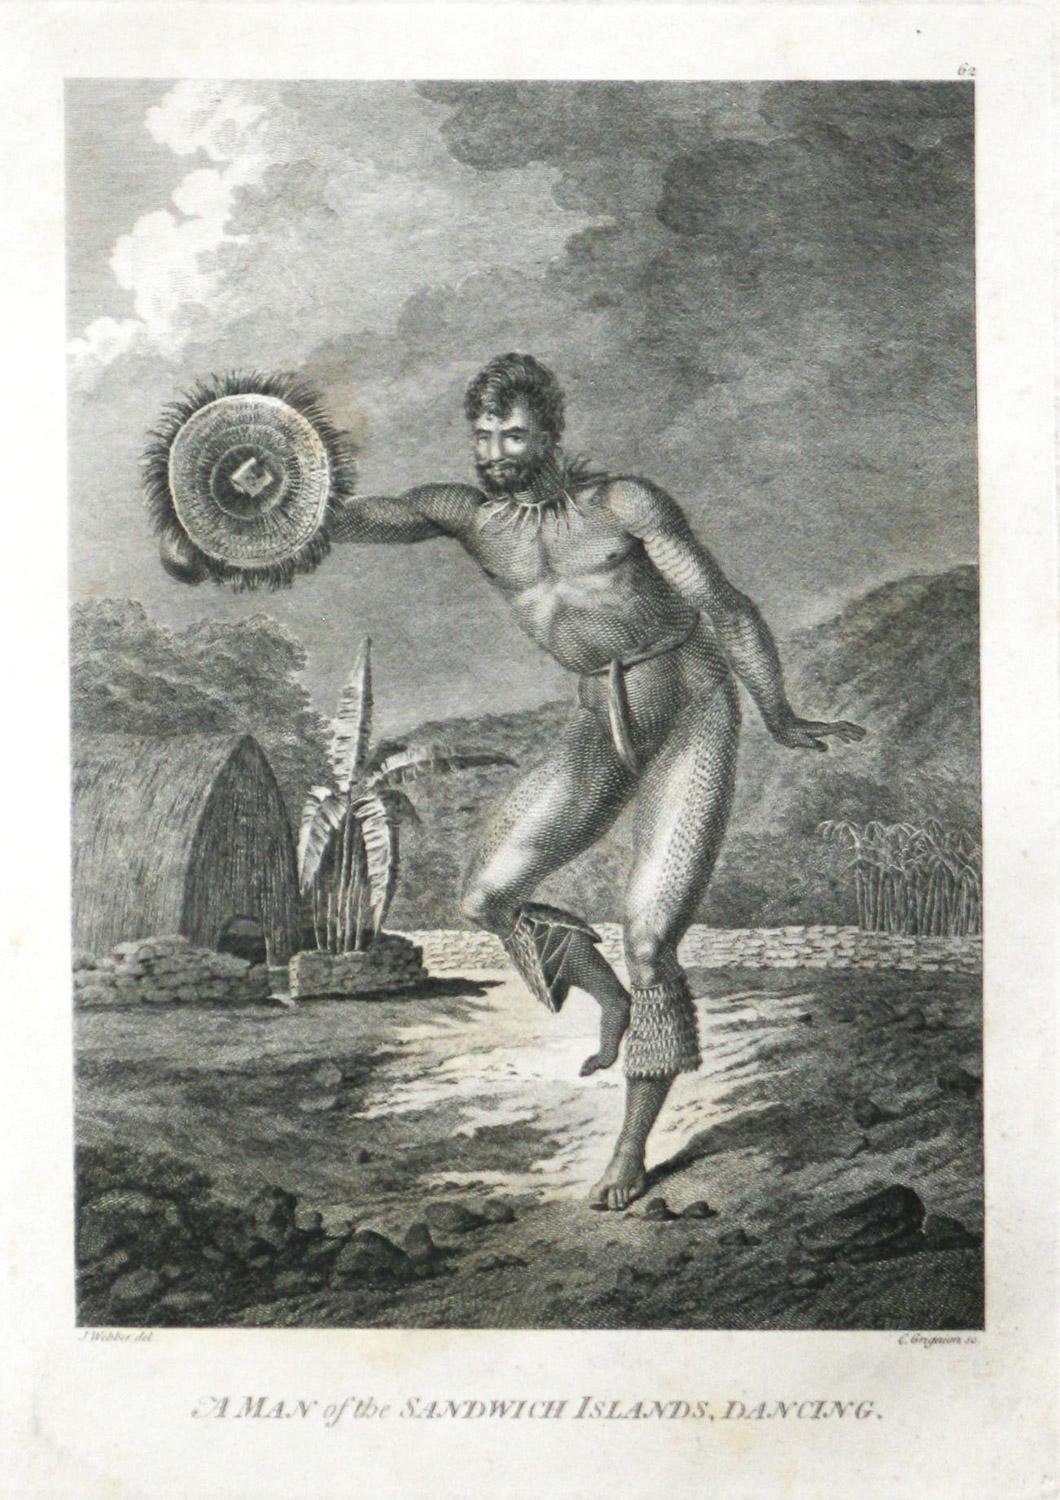 Ein Mann der Sandwich-Inseln, Tanzen (Hawaii) von Captain Cooks Reisen graviert